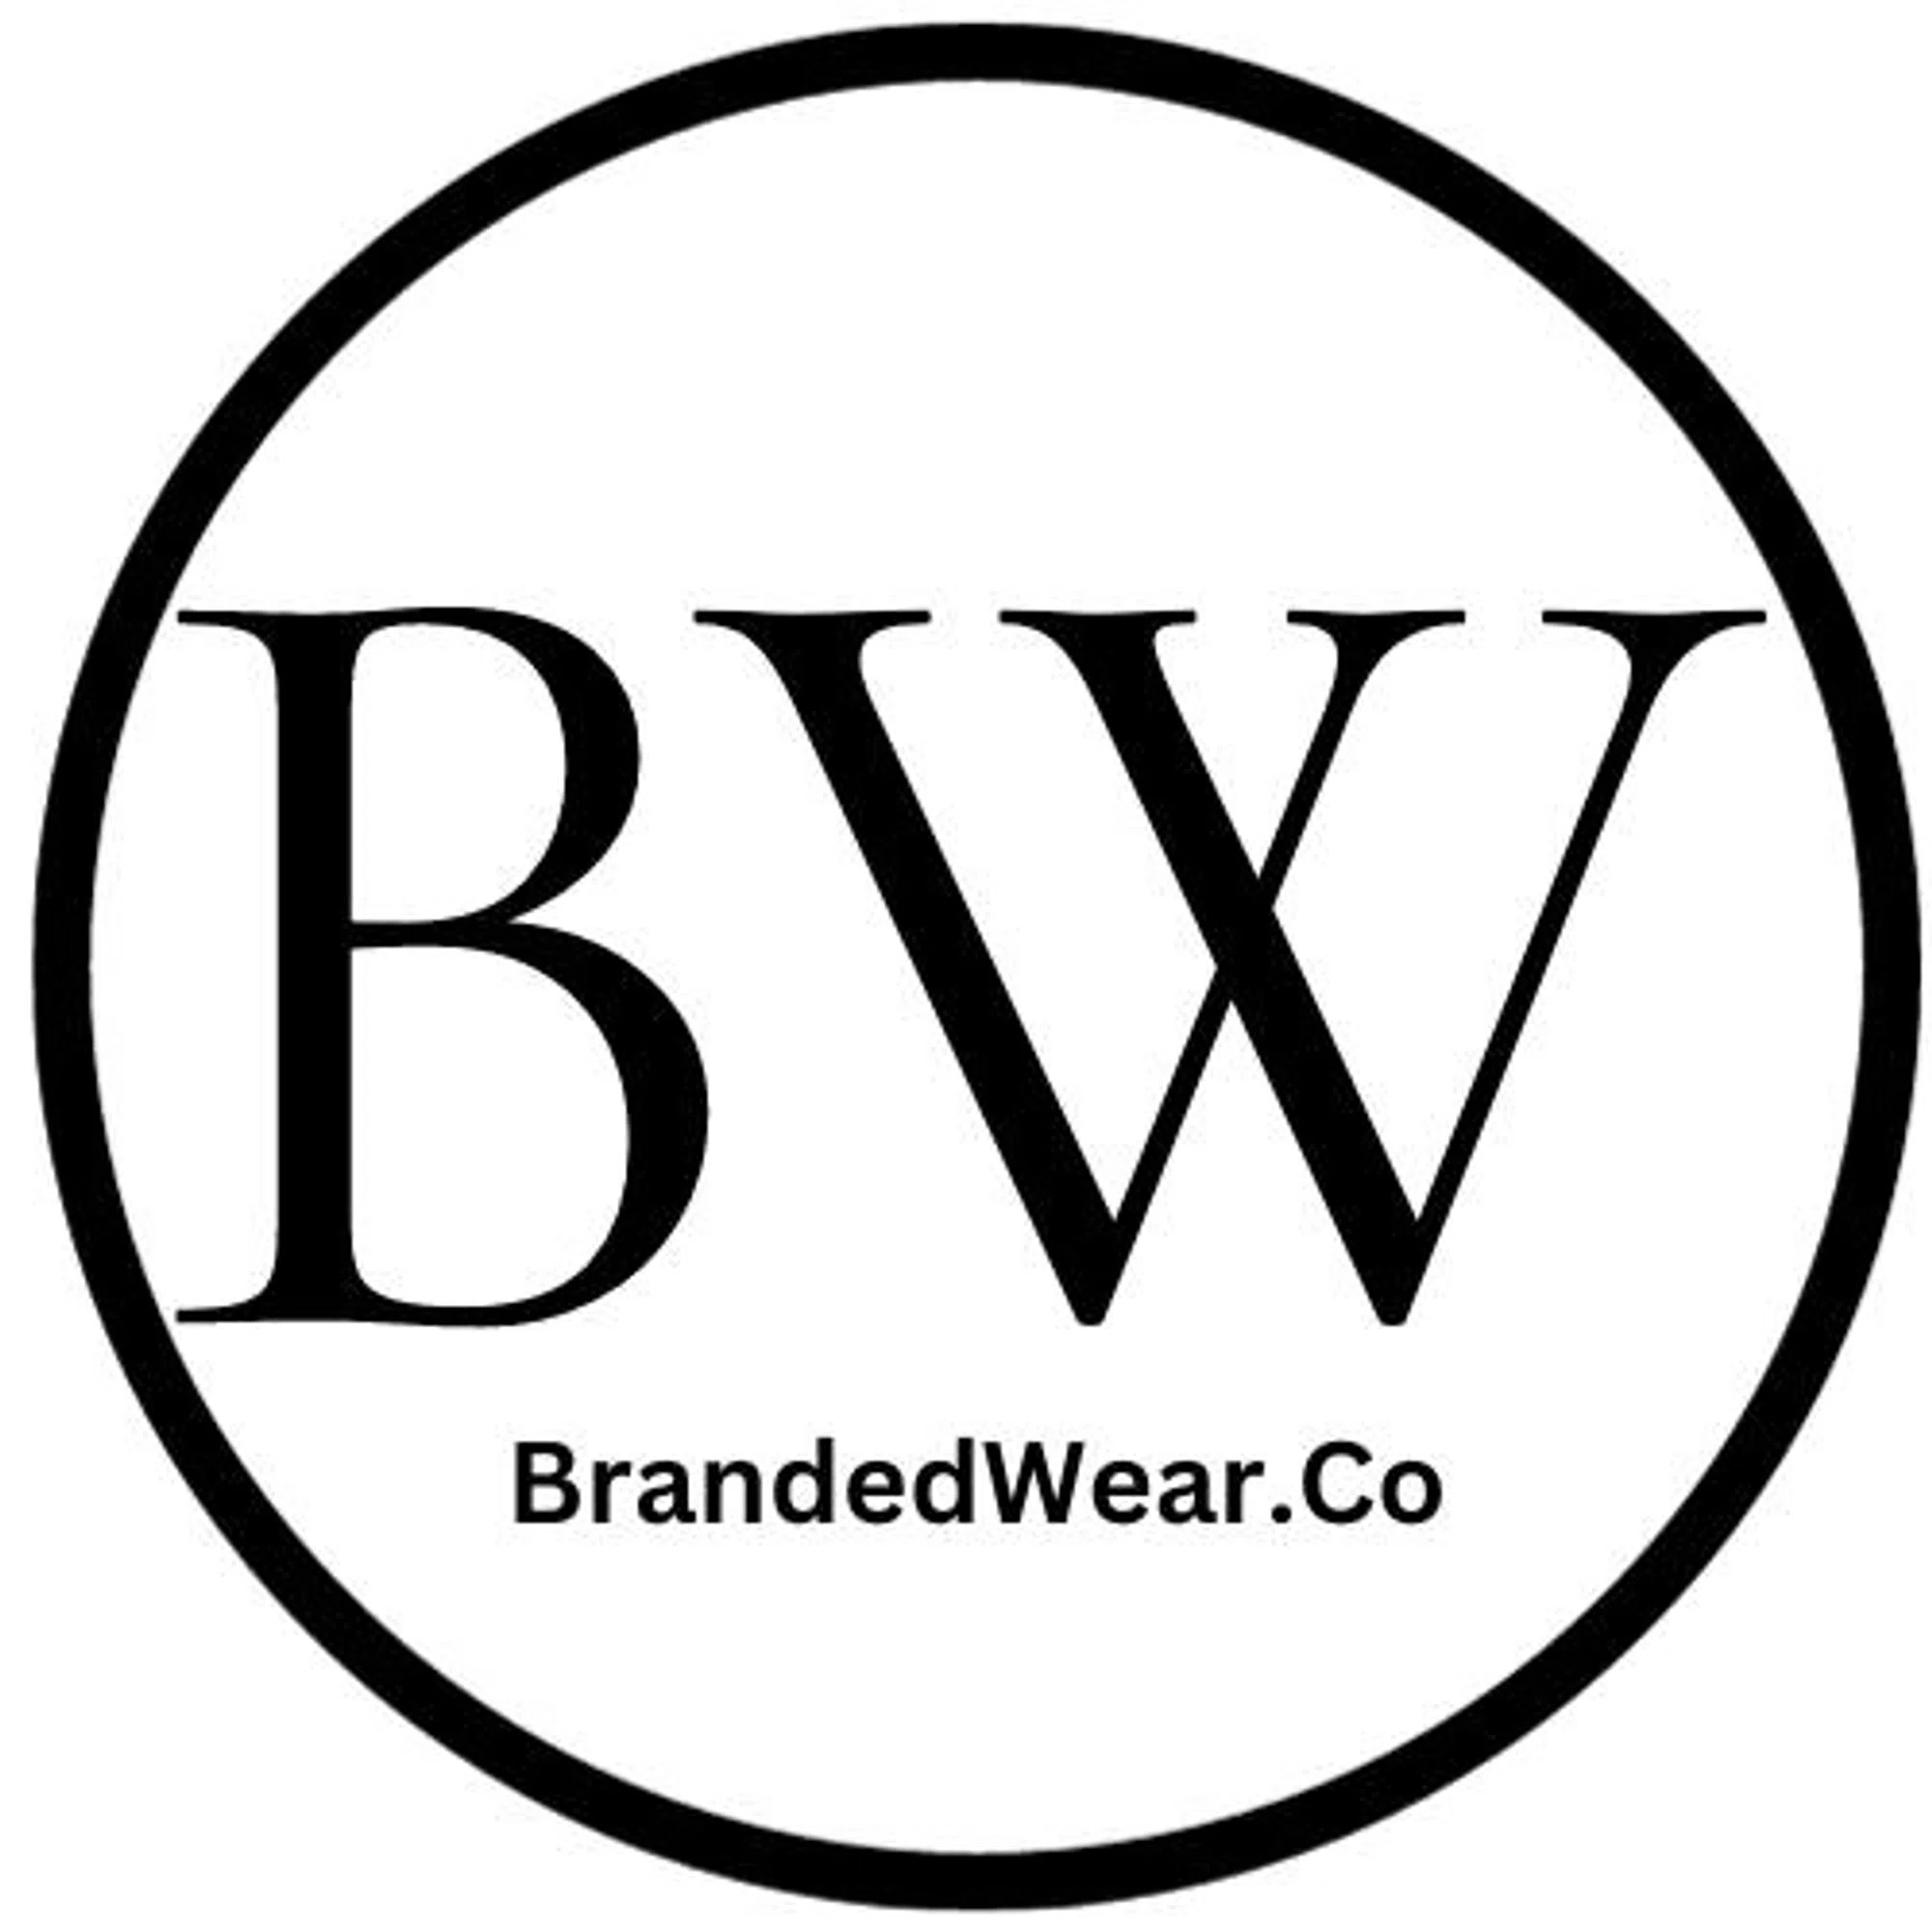 BrandedWear.Co